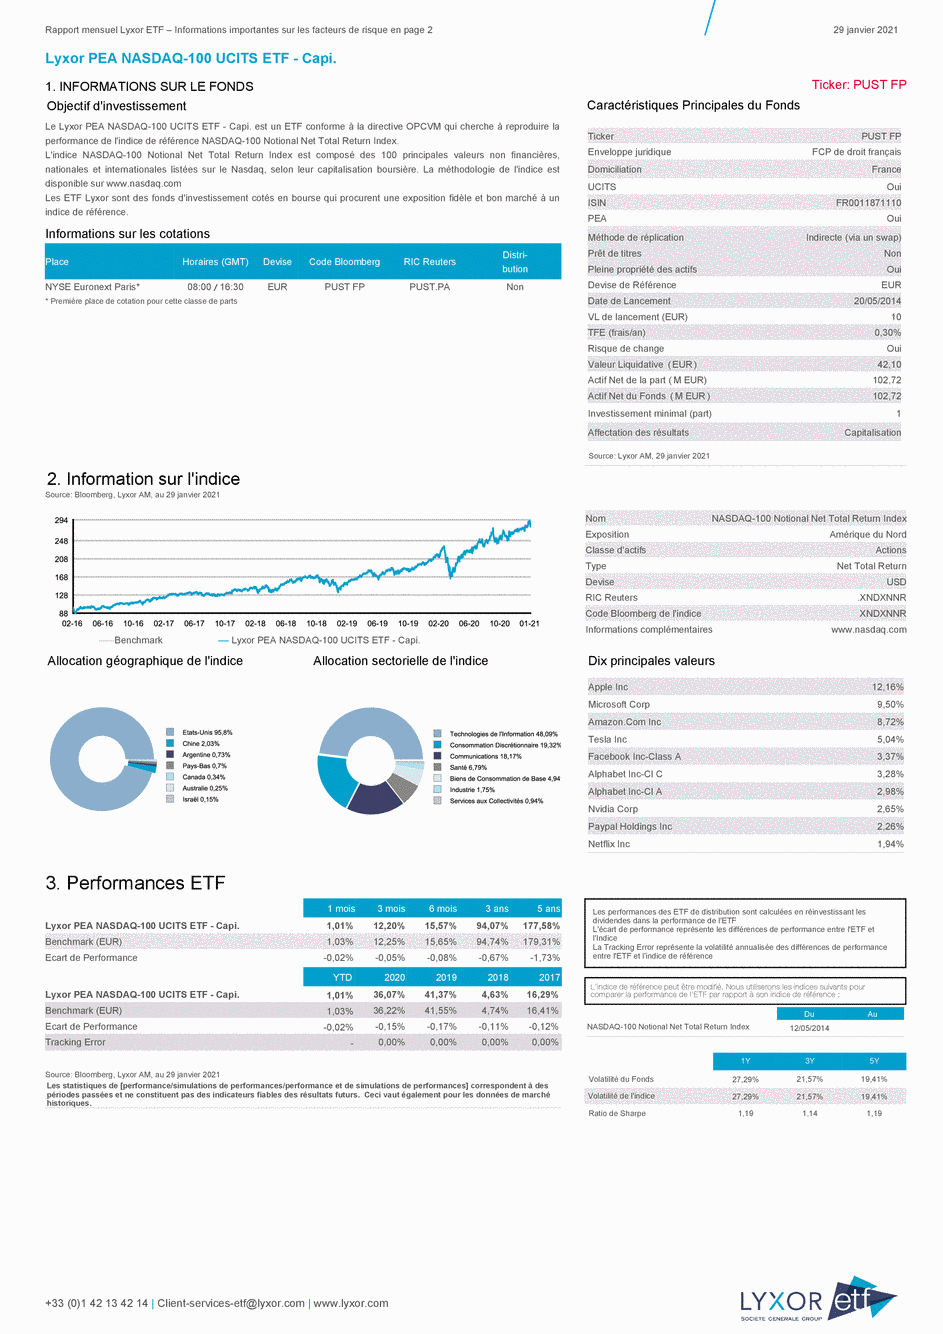 Reporting Lyxor PEA NASDAQ-100 UCITS ETF - Capi. - 29/01/2021 - Français